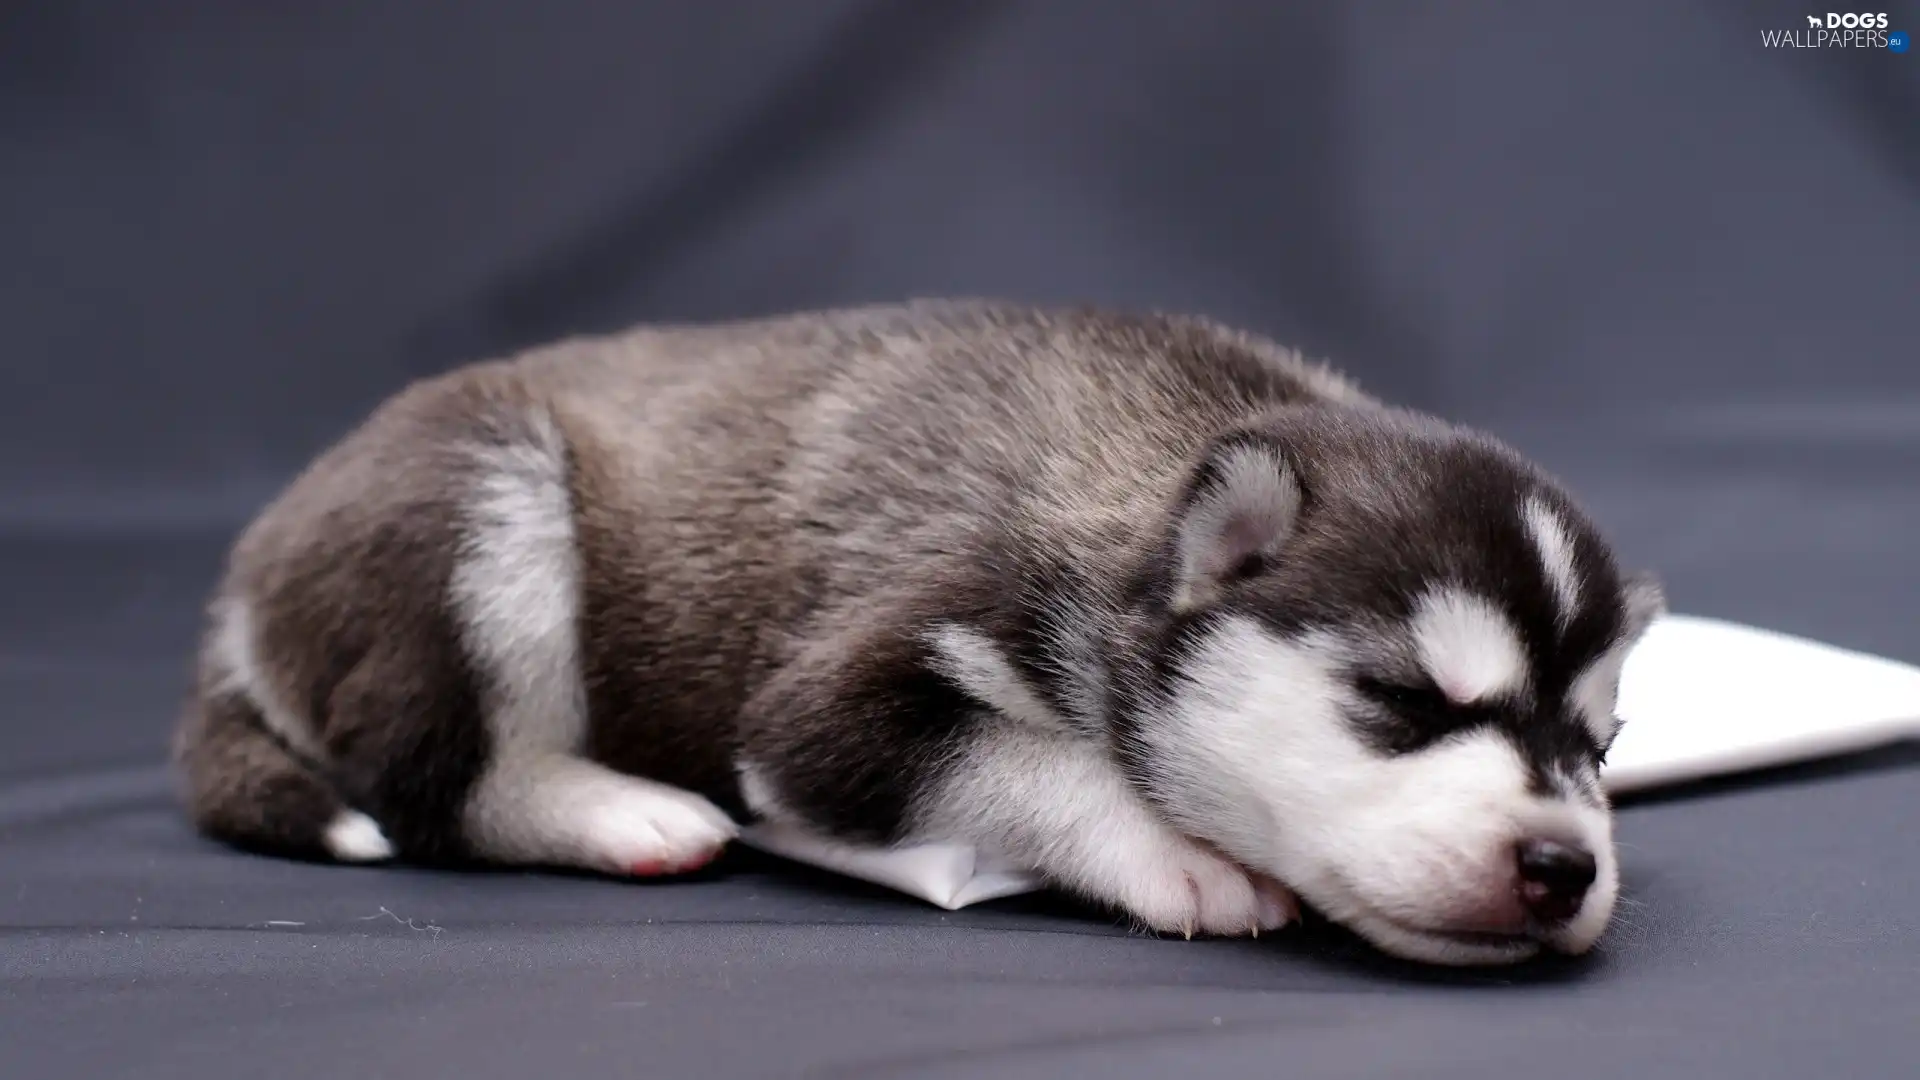 Puppy, Siberian Husky, sleepy